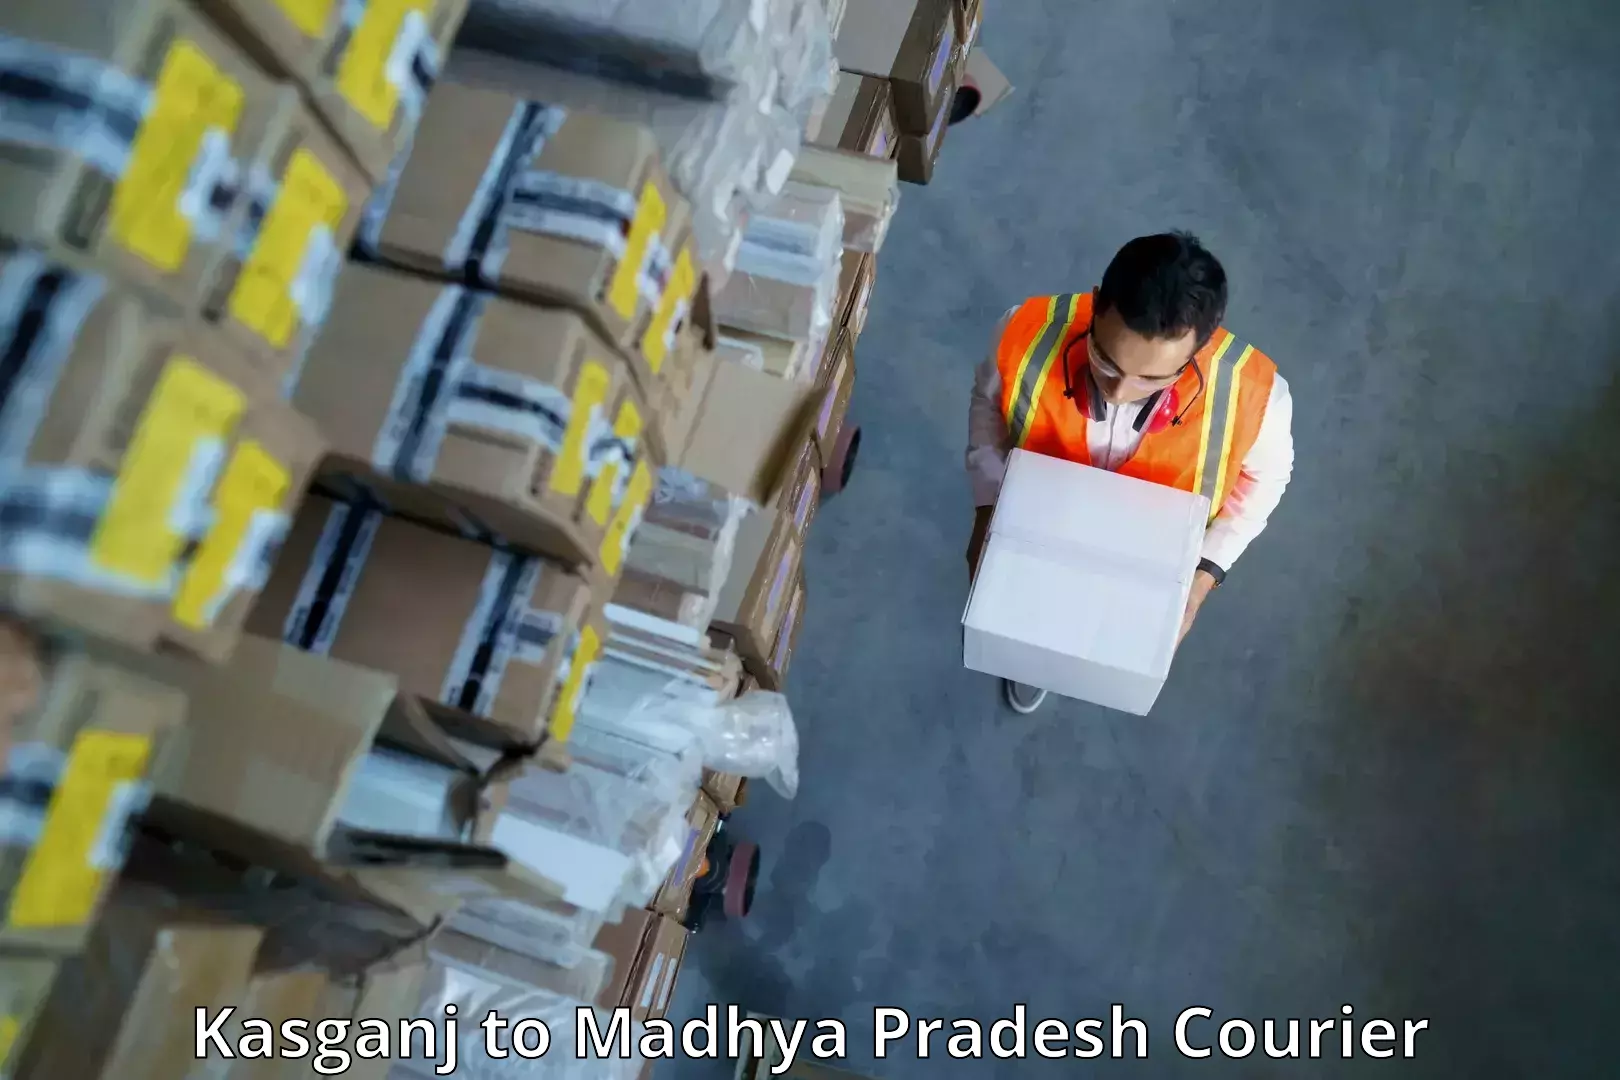 Comprehensive delivery network Kasganj to Shujalpur